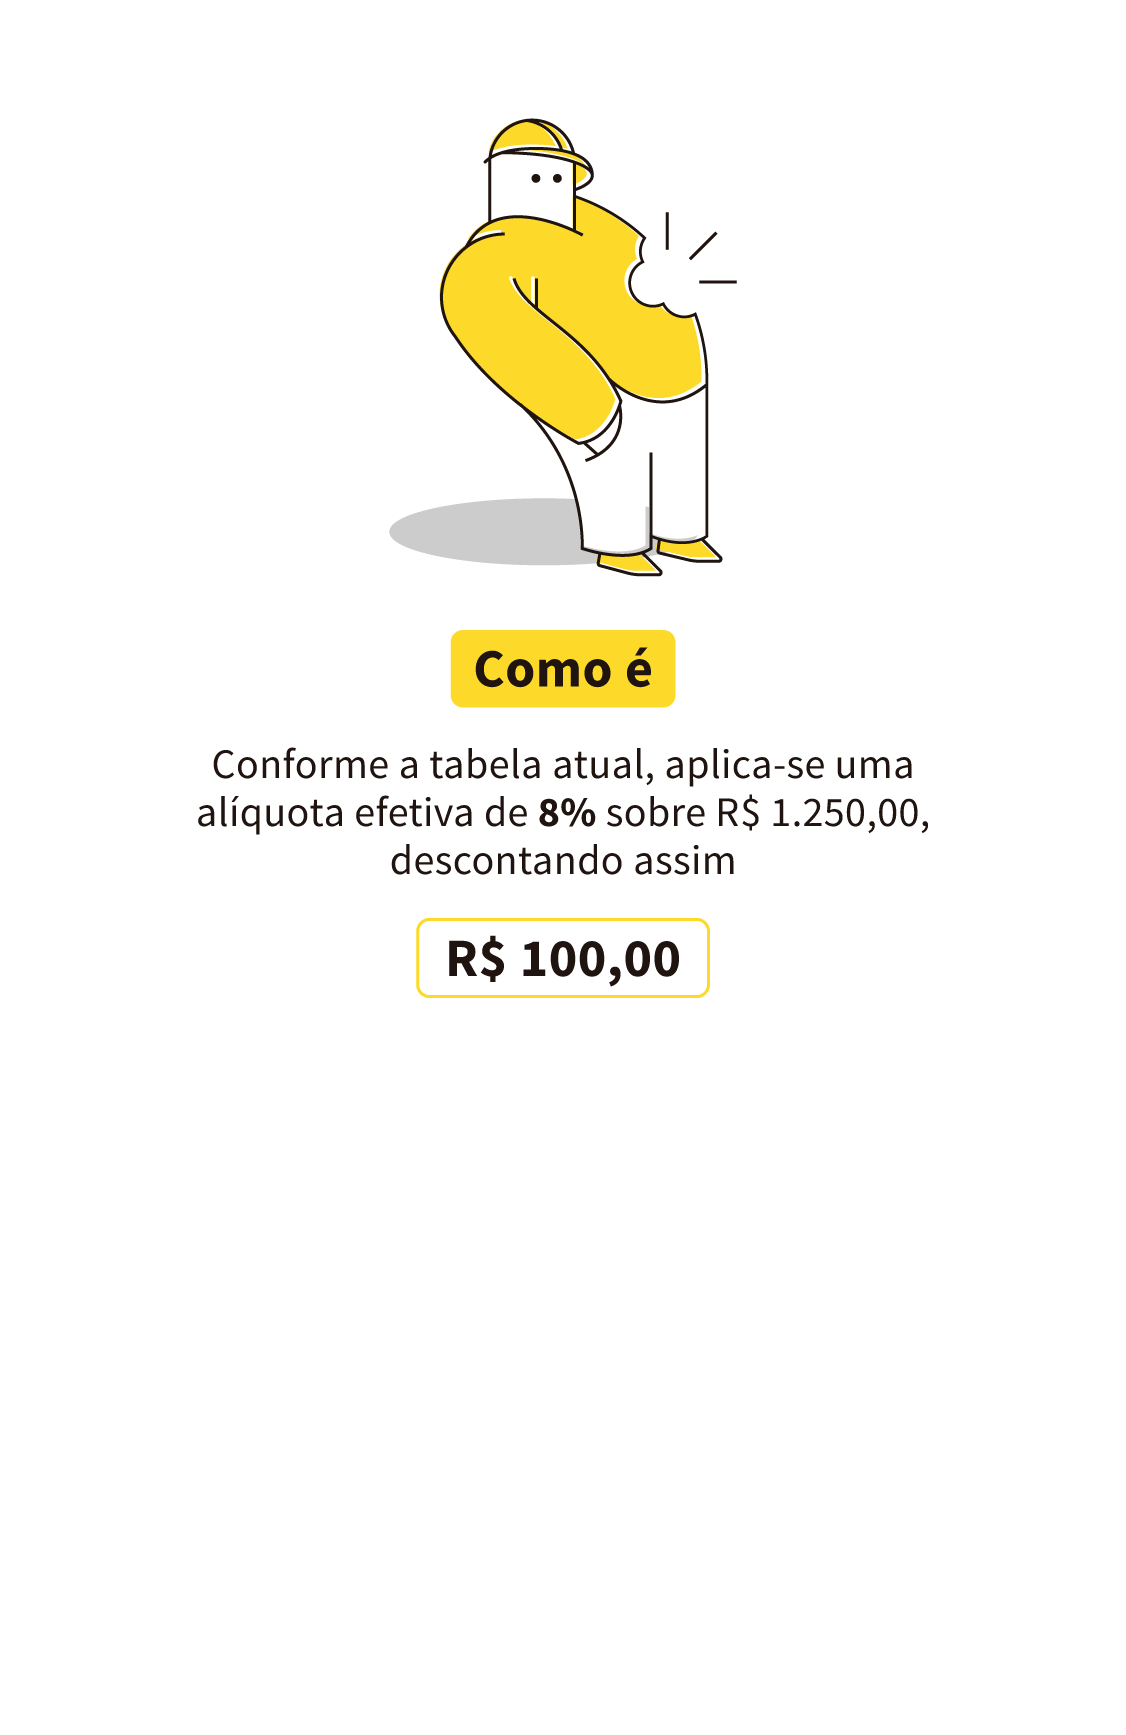 INSS. COMO É HOJE: exemplo de alíquota, considerando um salário de R$ 1.250,00